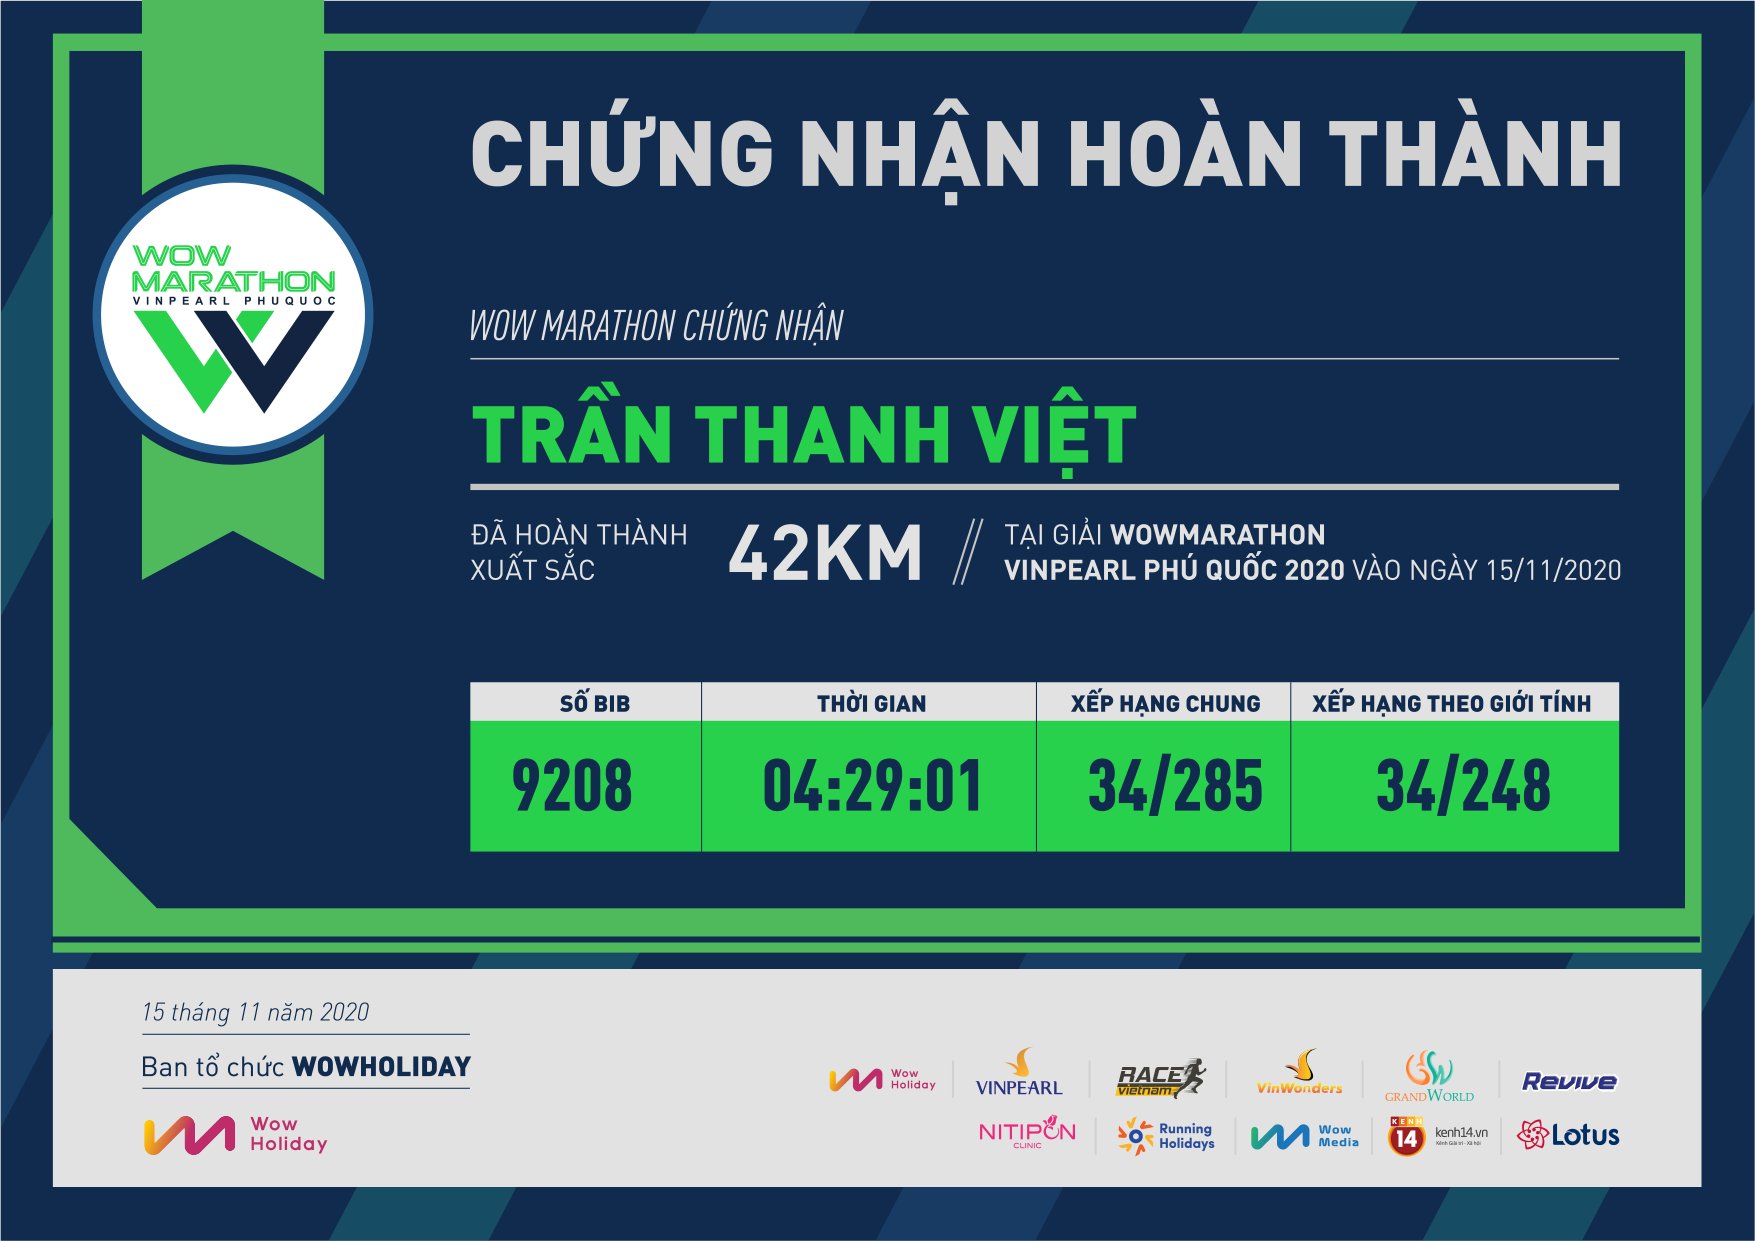 9208 - Trần Thanh Việt